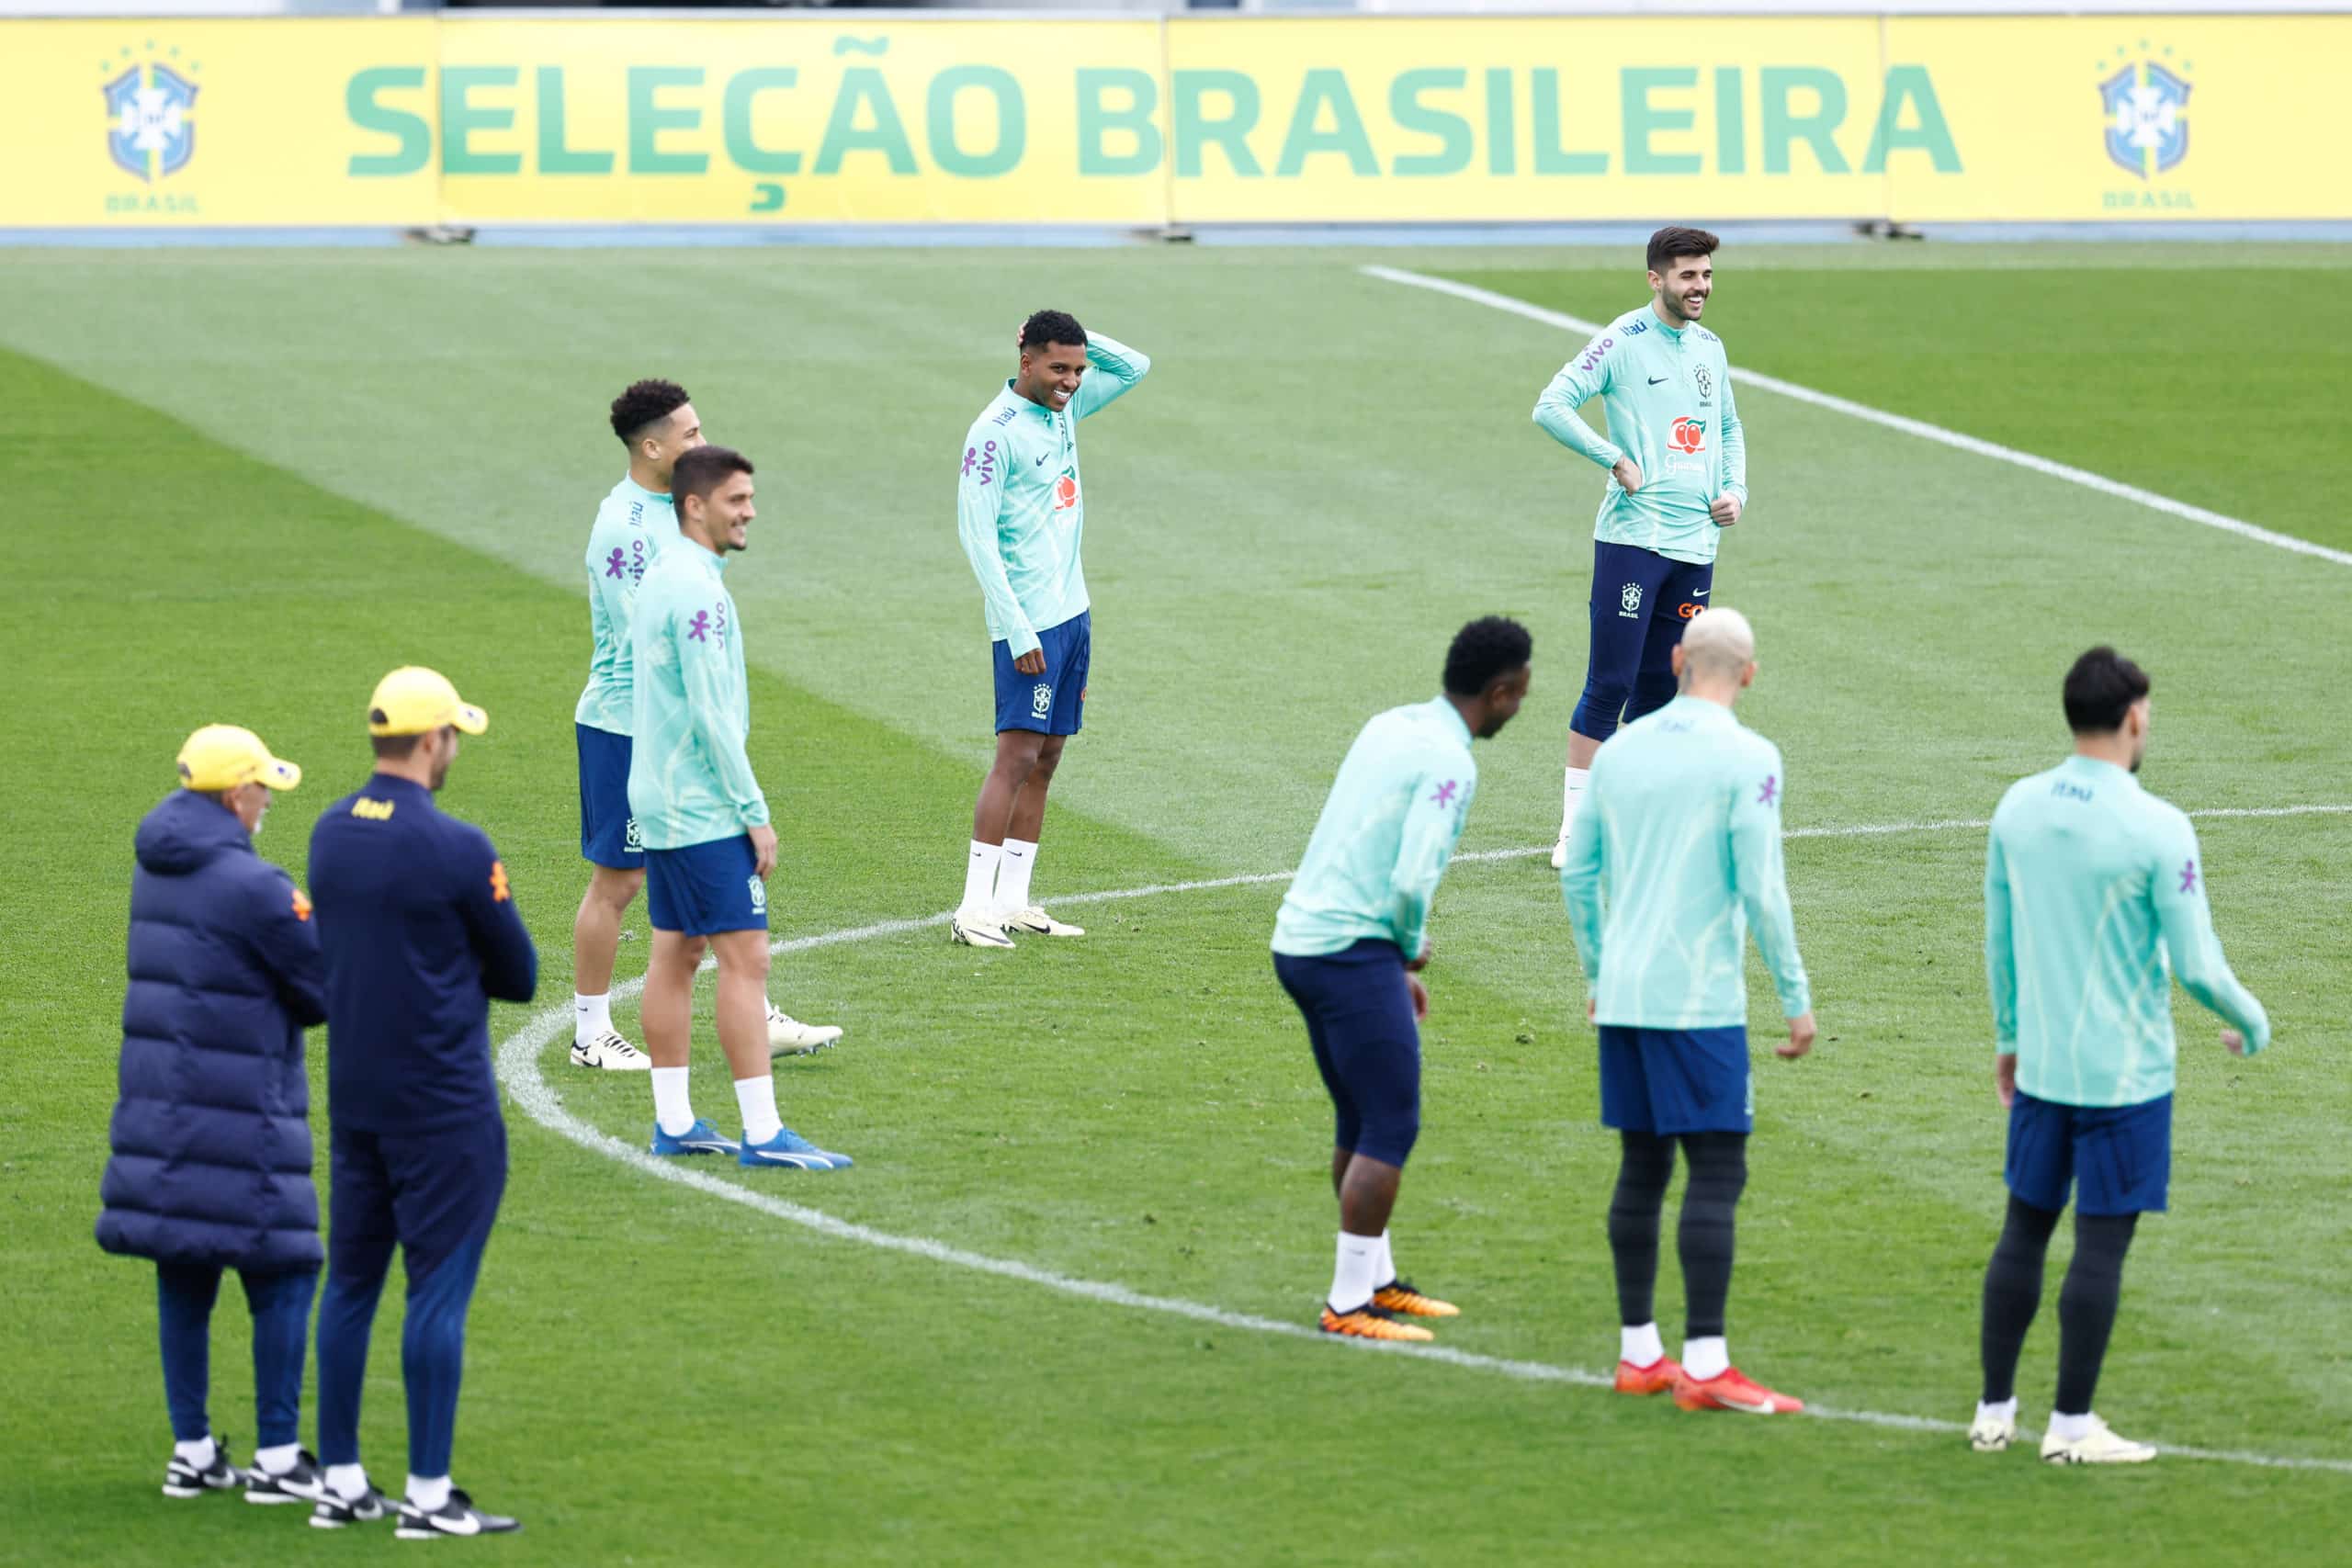 - Seleção Brasileira à procura de um feito histórico contra a Espanha